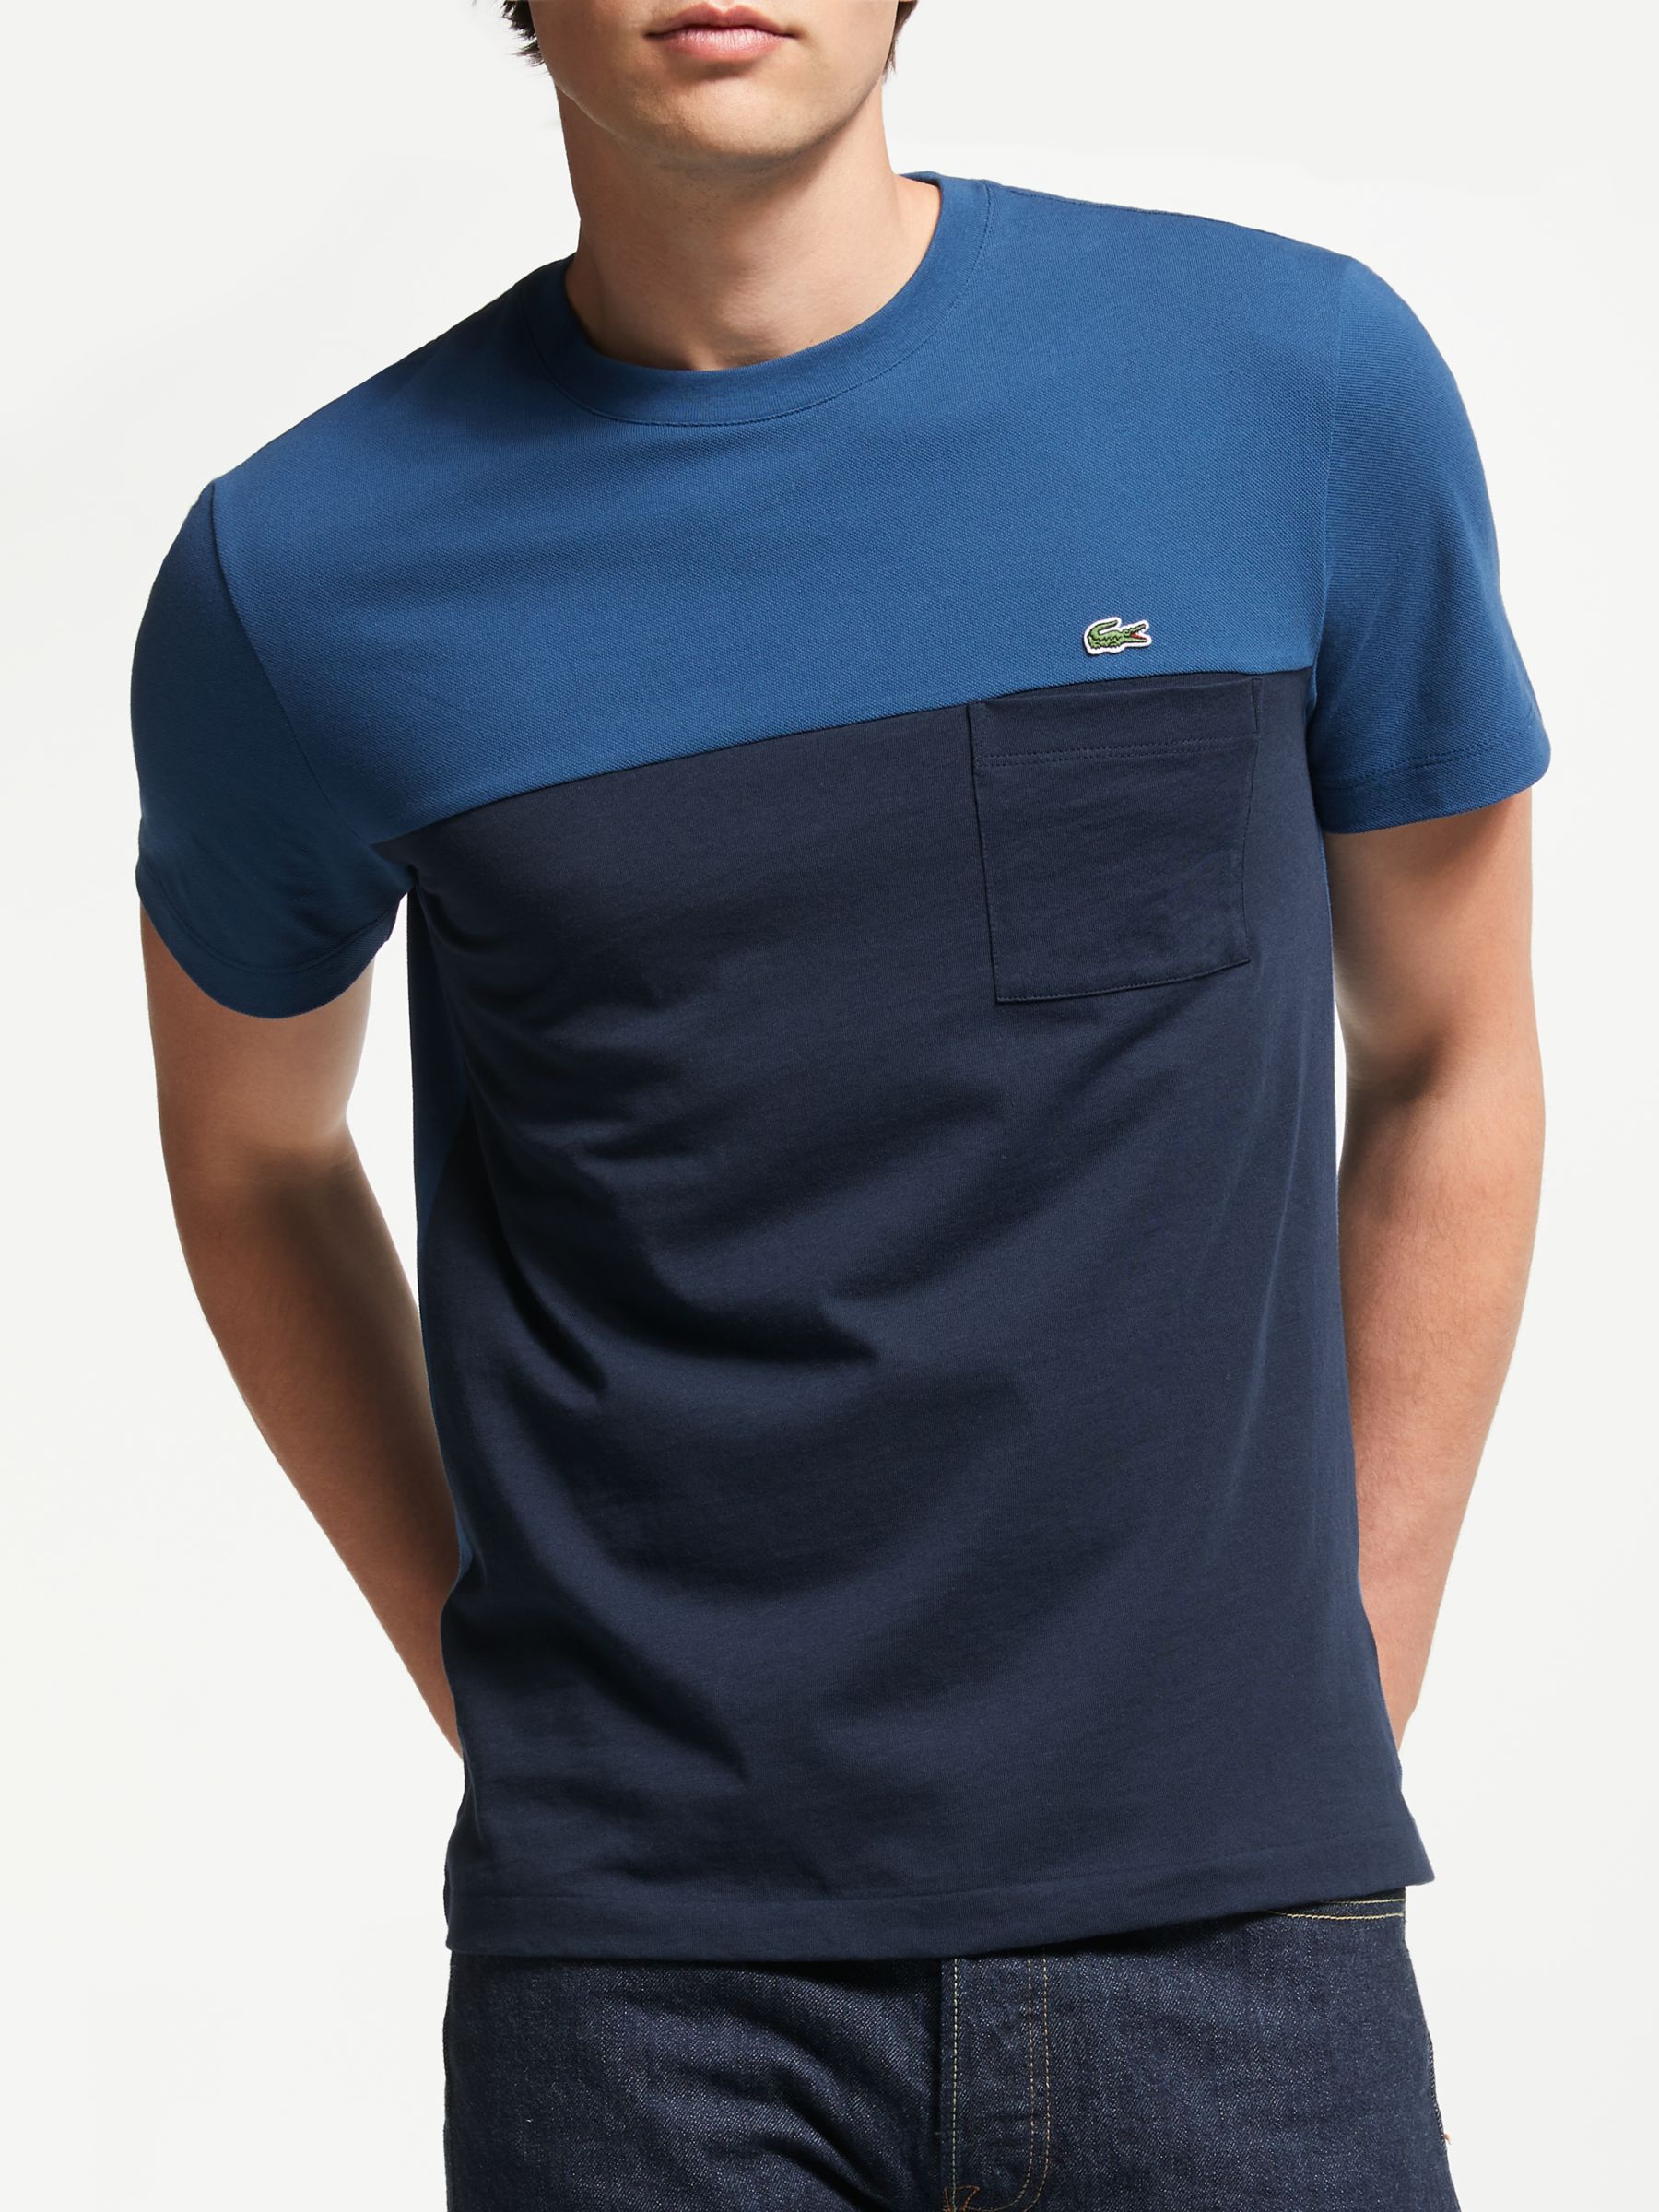 lacoste t shirt blue